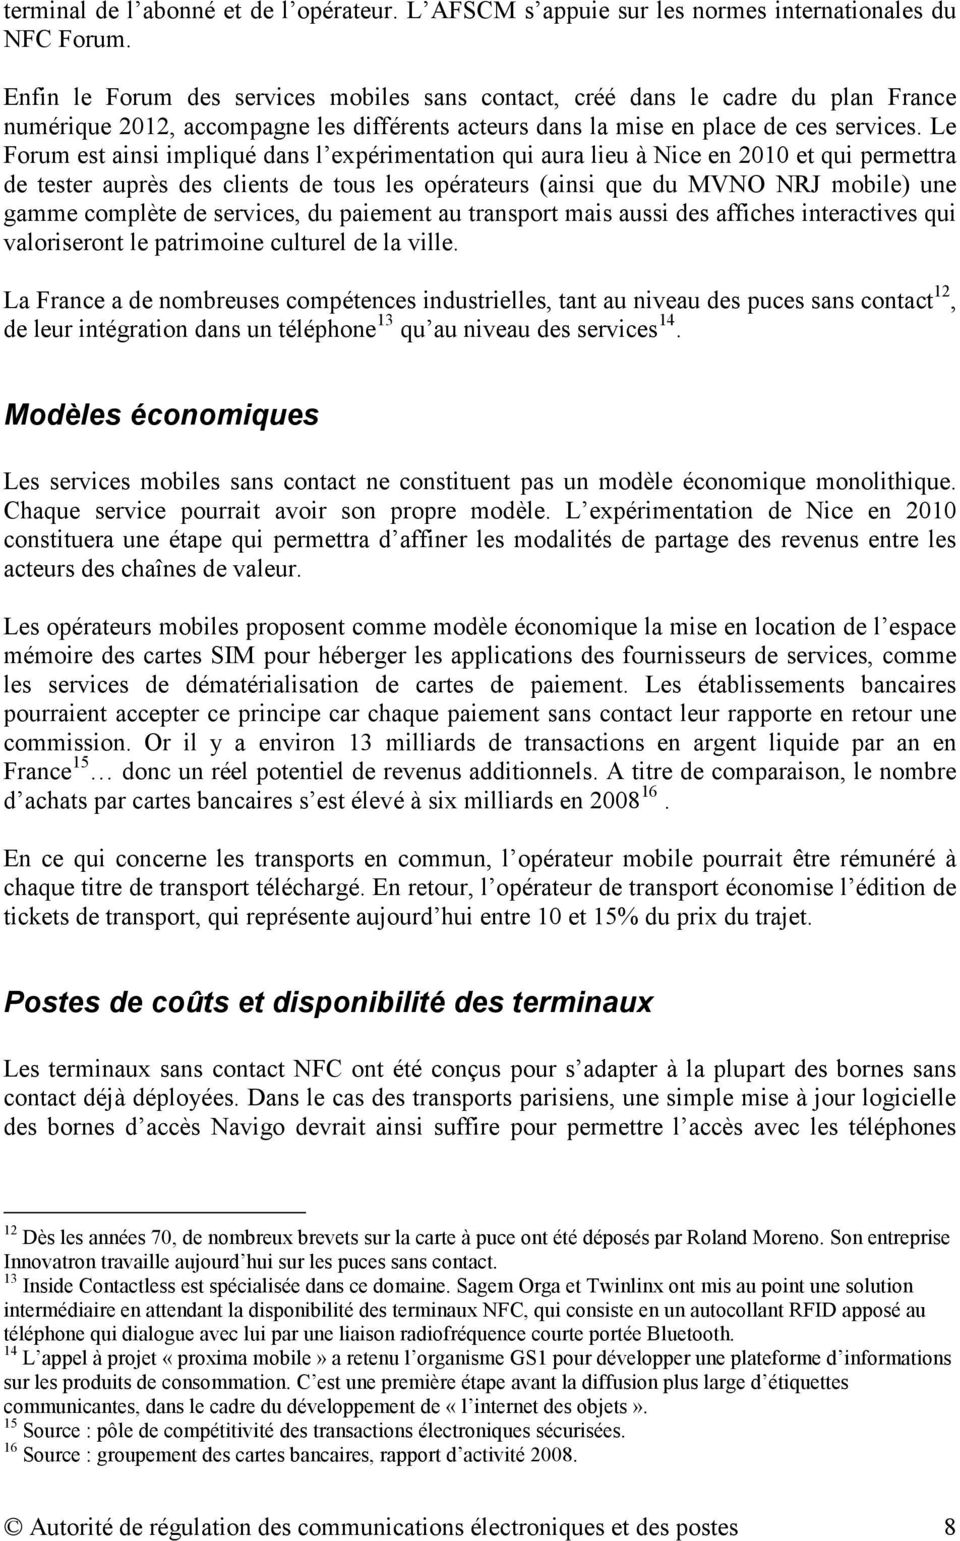 Le Forum est ainsi impliqué dans l expérimentation qui aura lieu à Nice en 2010 et qui permettra de tester auprès des clients de tous les opérateurs (ainsi que du MVNO NRJ mobile) une gamme complète